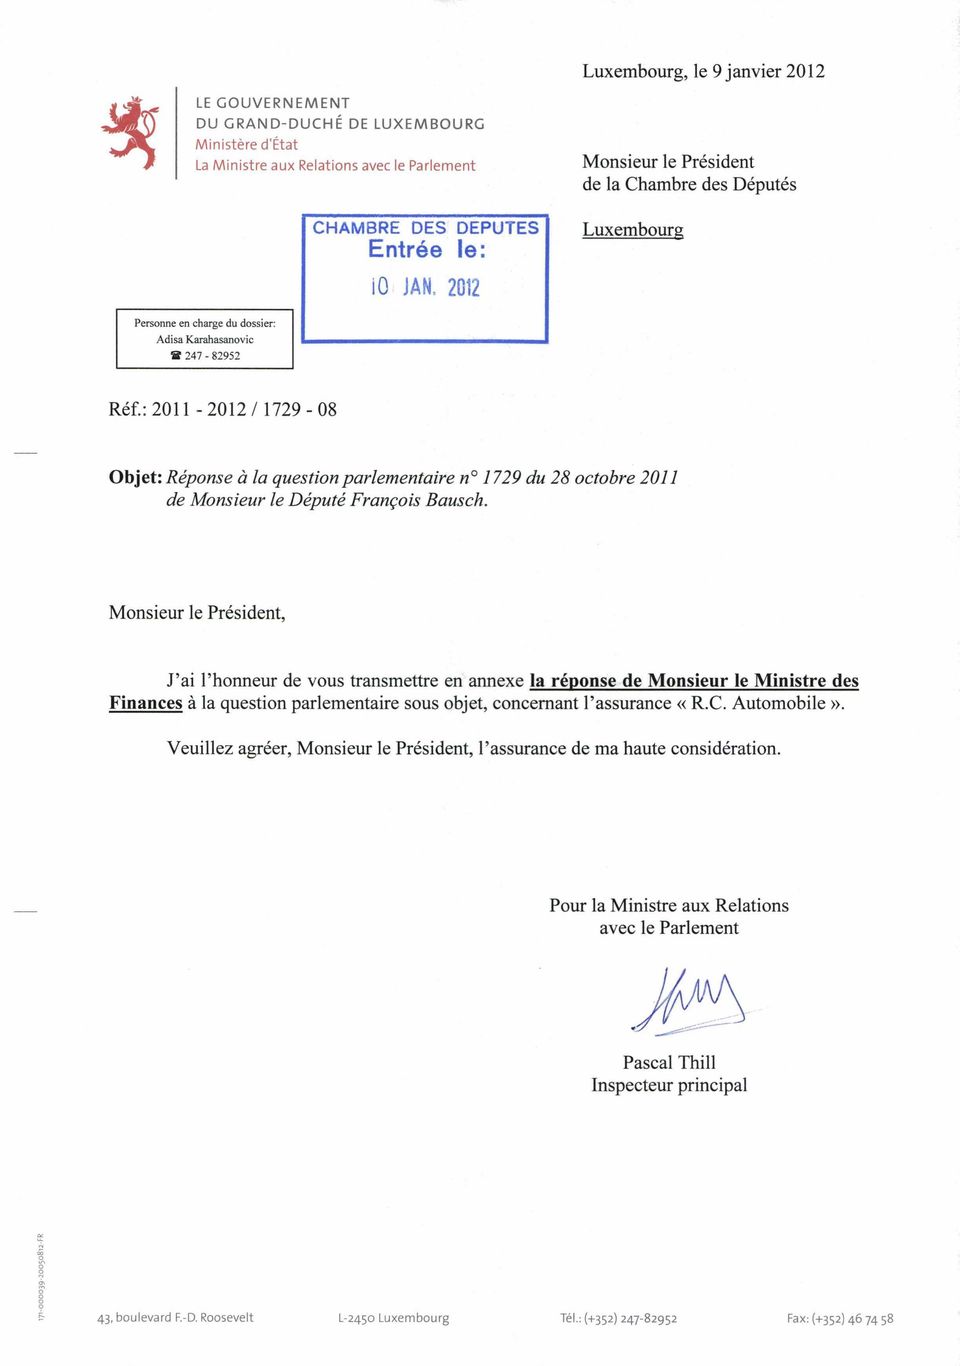 : 2011-2012/1729-08 Objet: Réponse à la question parlementaire no1729 du 28 octobre 2011 de Monsieur le Député François Bausch.